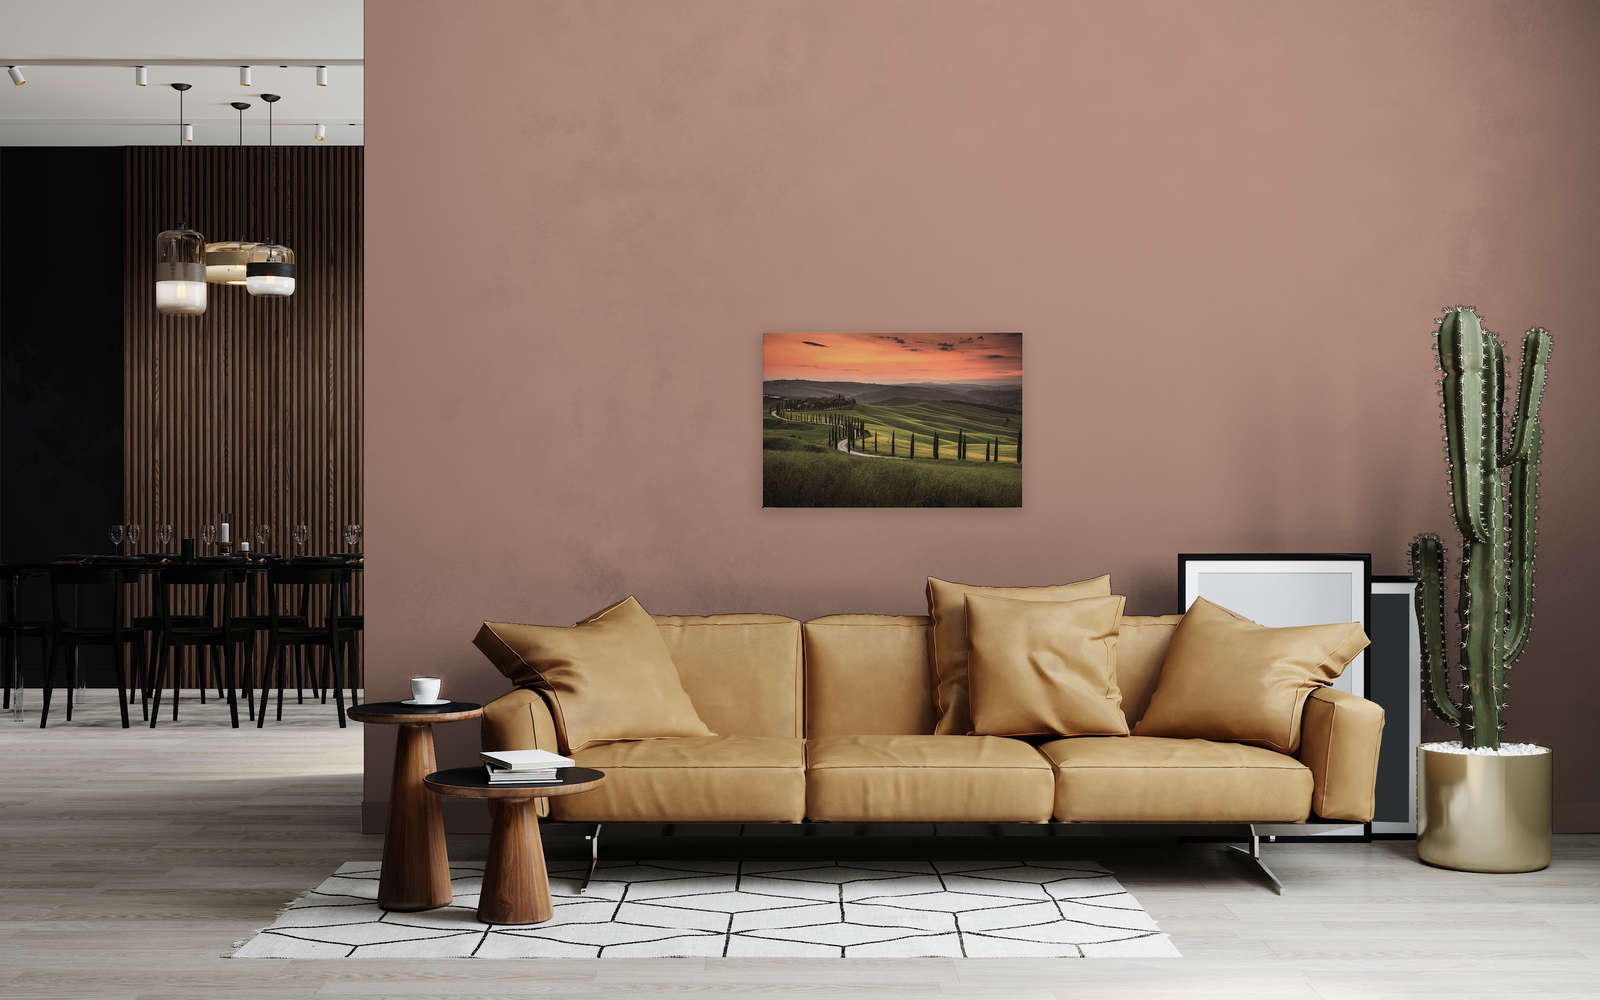             Toile avec paysage toscan au crépuscule - 0,90 m x 0,60 m
        